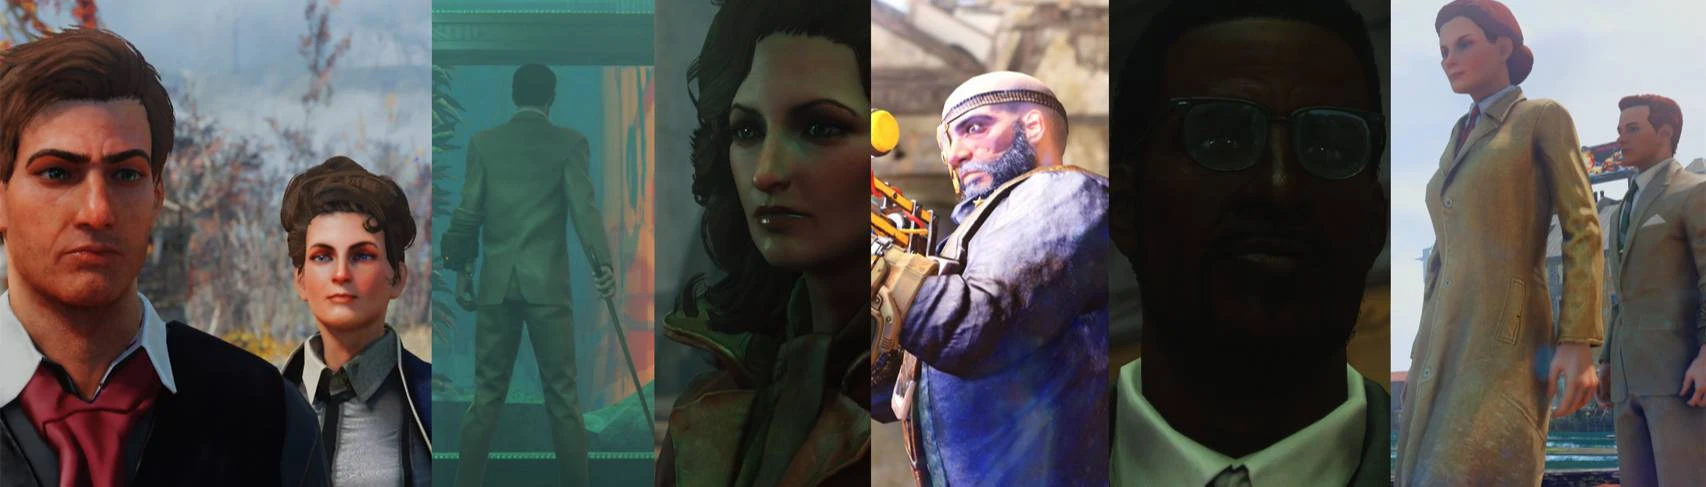 the main characters image - Bioshock Infinite - ModDB